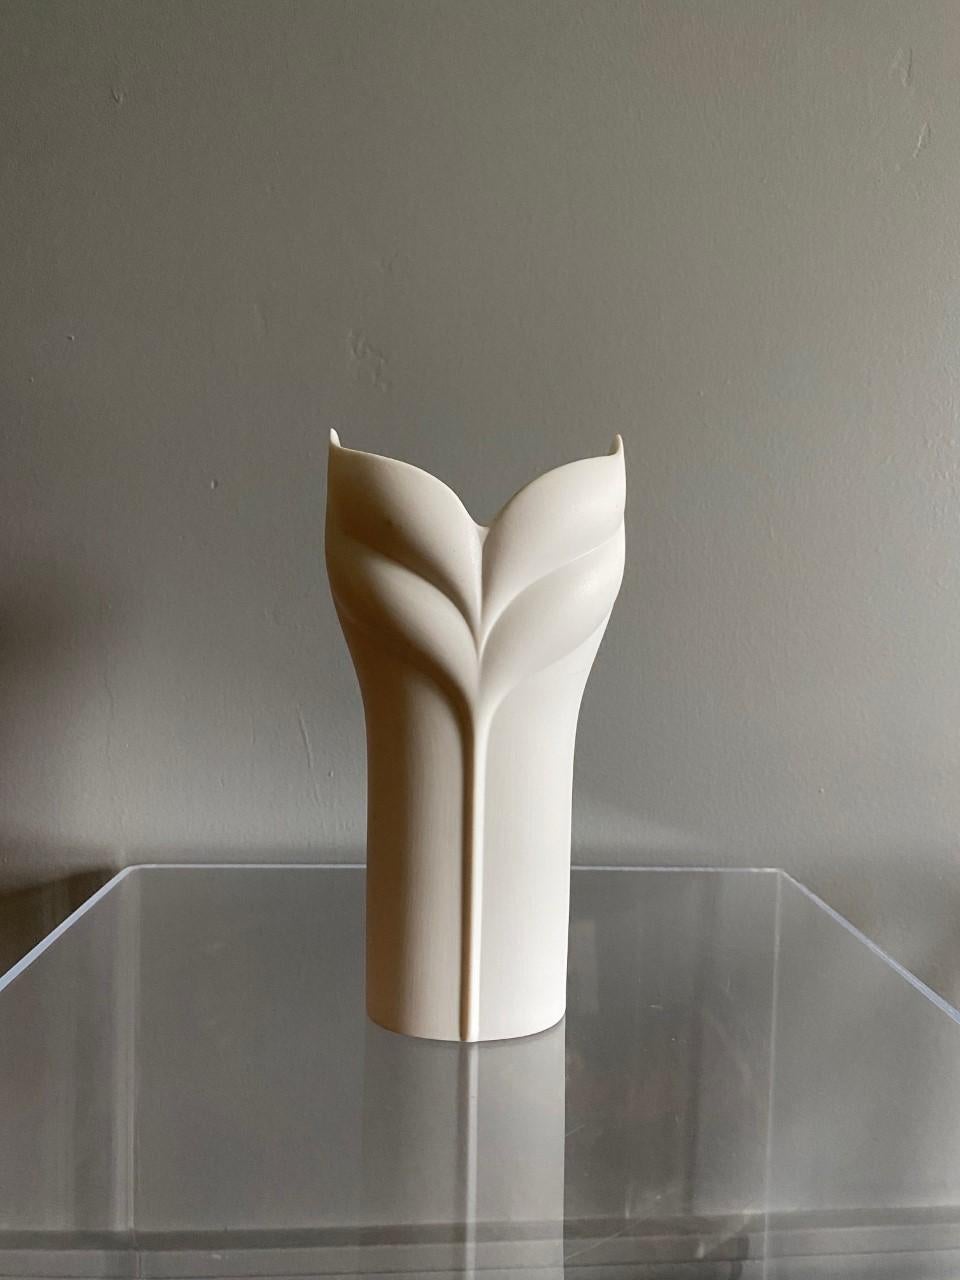 Magnifique et élégant vase op art en biscuit blanc par Uta Feyl pour Rosenthal Studio linie. Cette pièce graphique et romantique date des années 1970. Les belles lignes longues et la finition blanche mate confèrent à cette pièce légèreté et